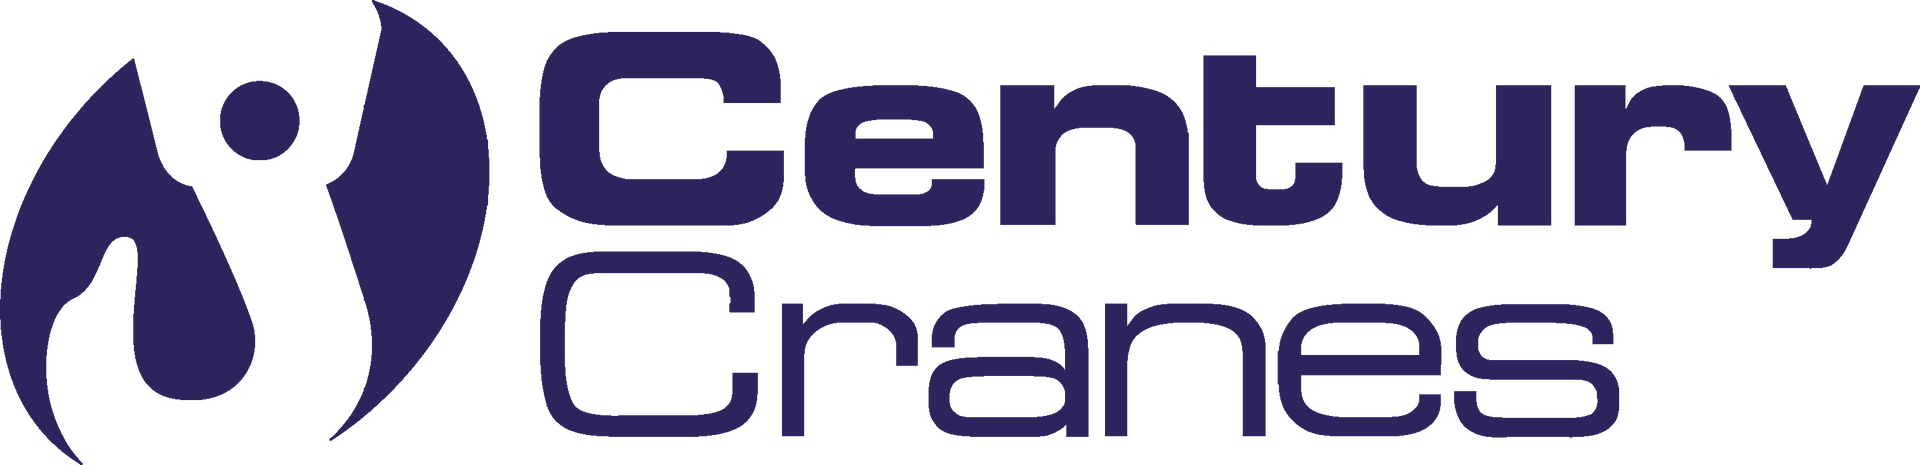 Century Cranes—Wet & Dry Crane Hire in Cairns